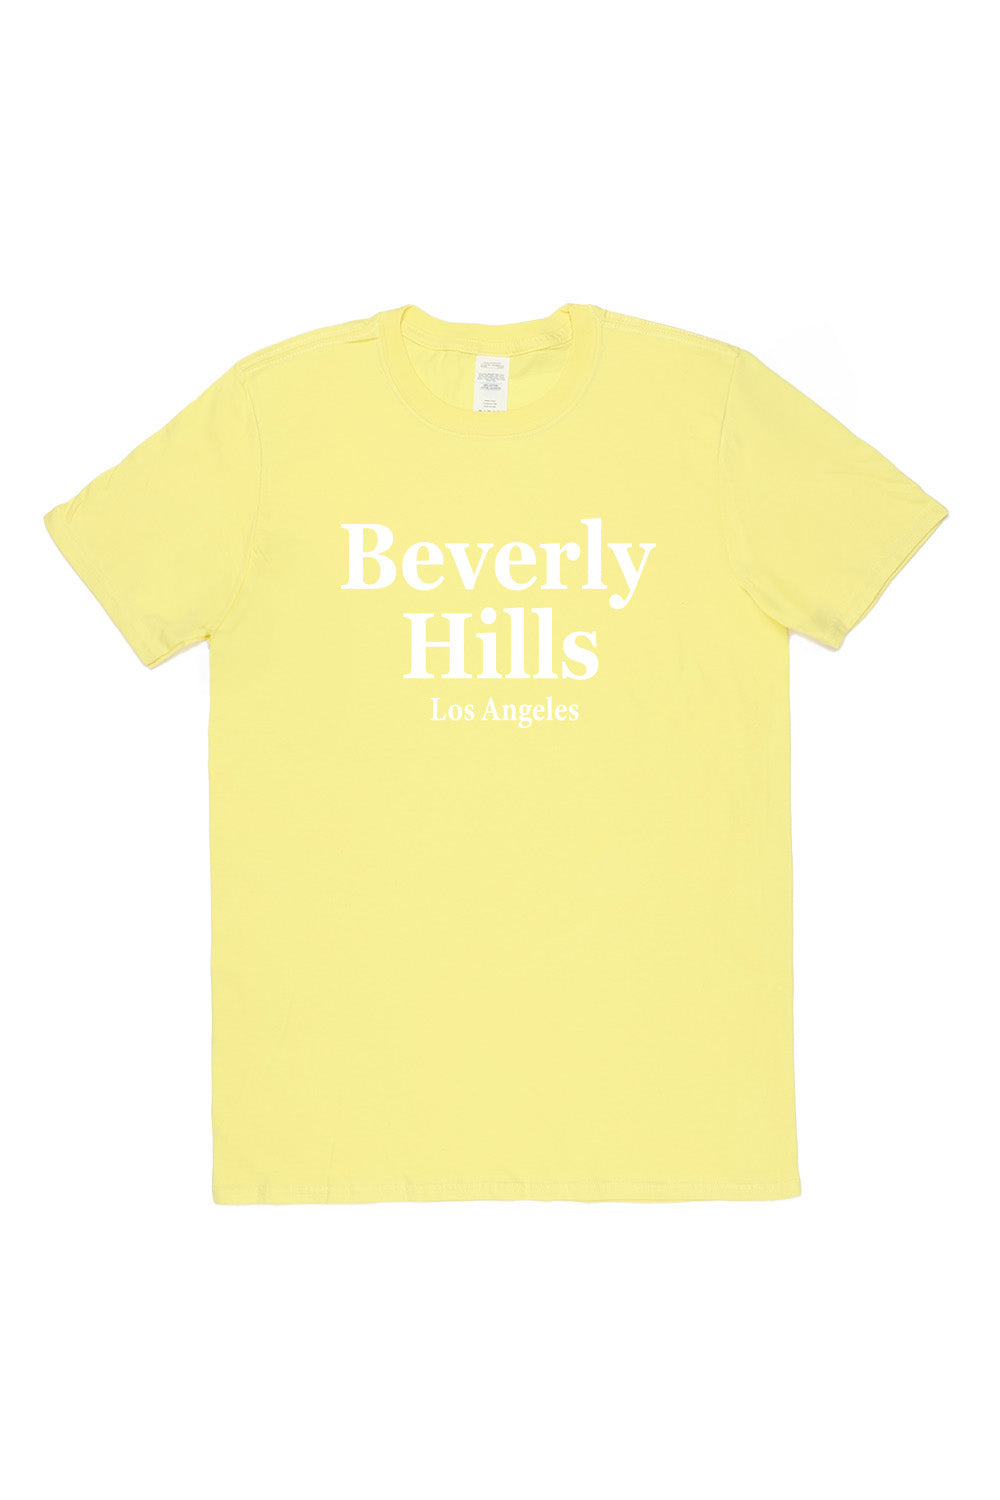 Beverly Hills T-Shirt in Yellow (Custom Packs)